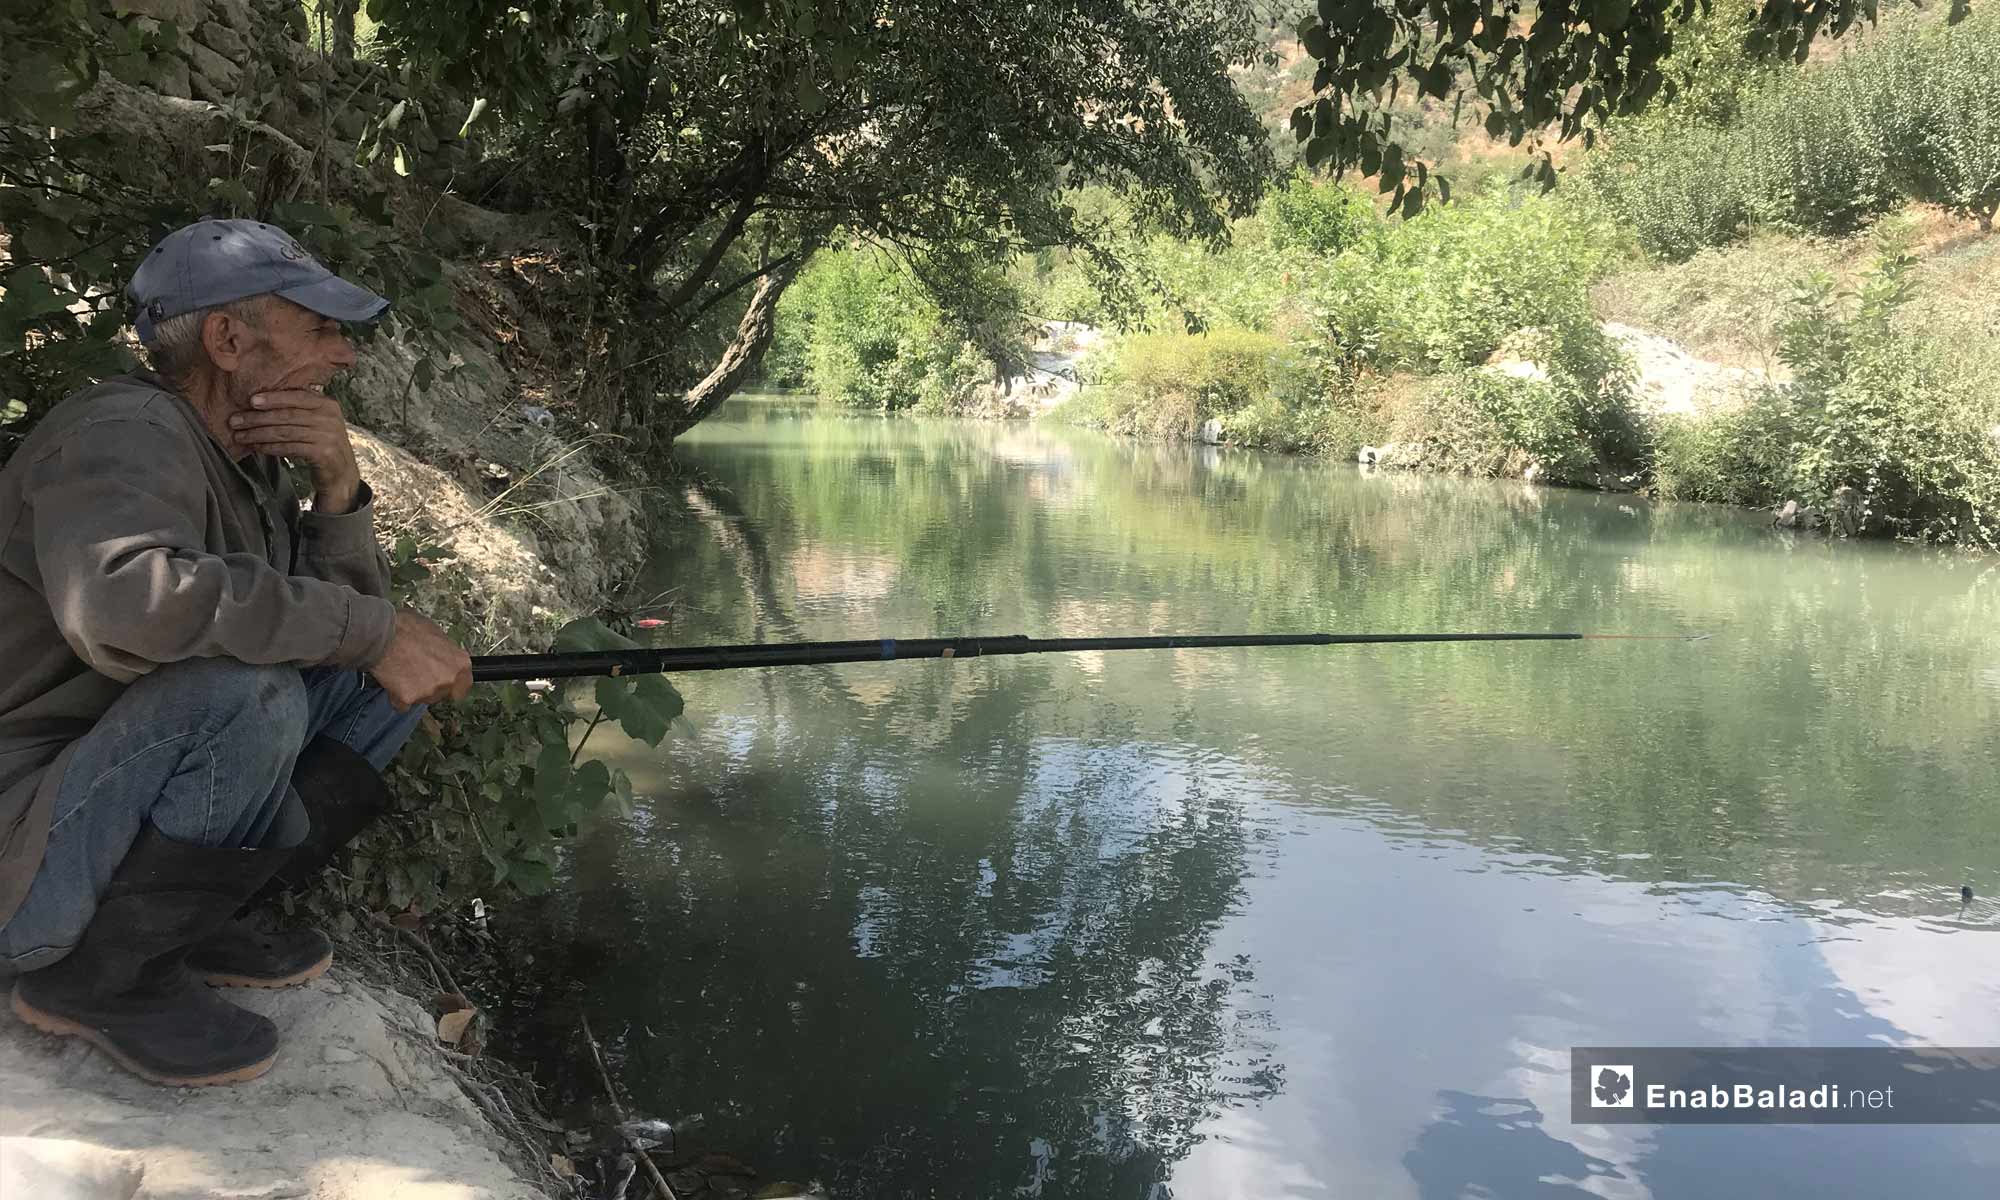 رجل يصطاد السمك على نهر العاصي قرب مدينة دركوش بريف إدلب الغربي- 8 من أيلول 2019 (عنب بلدي)